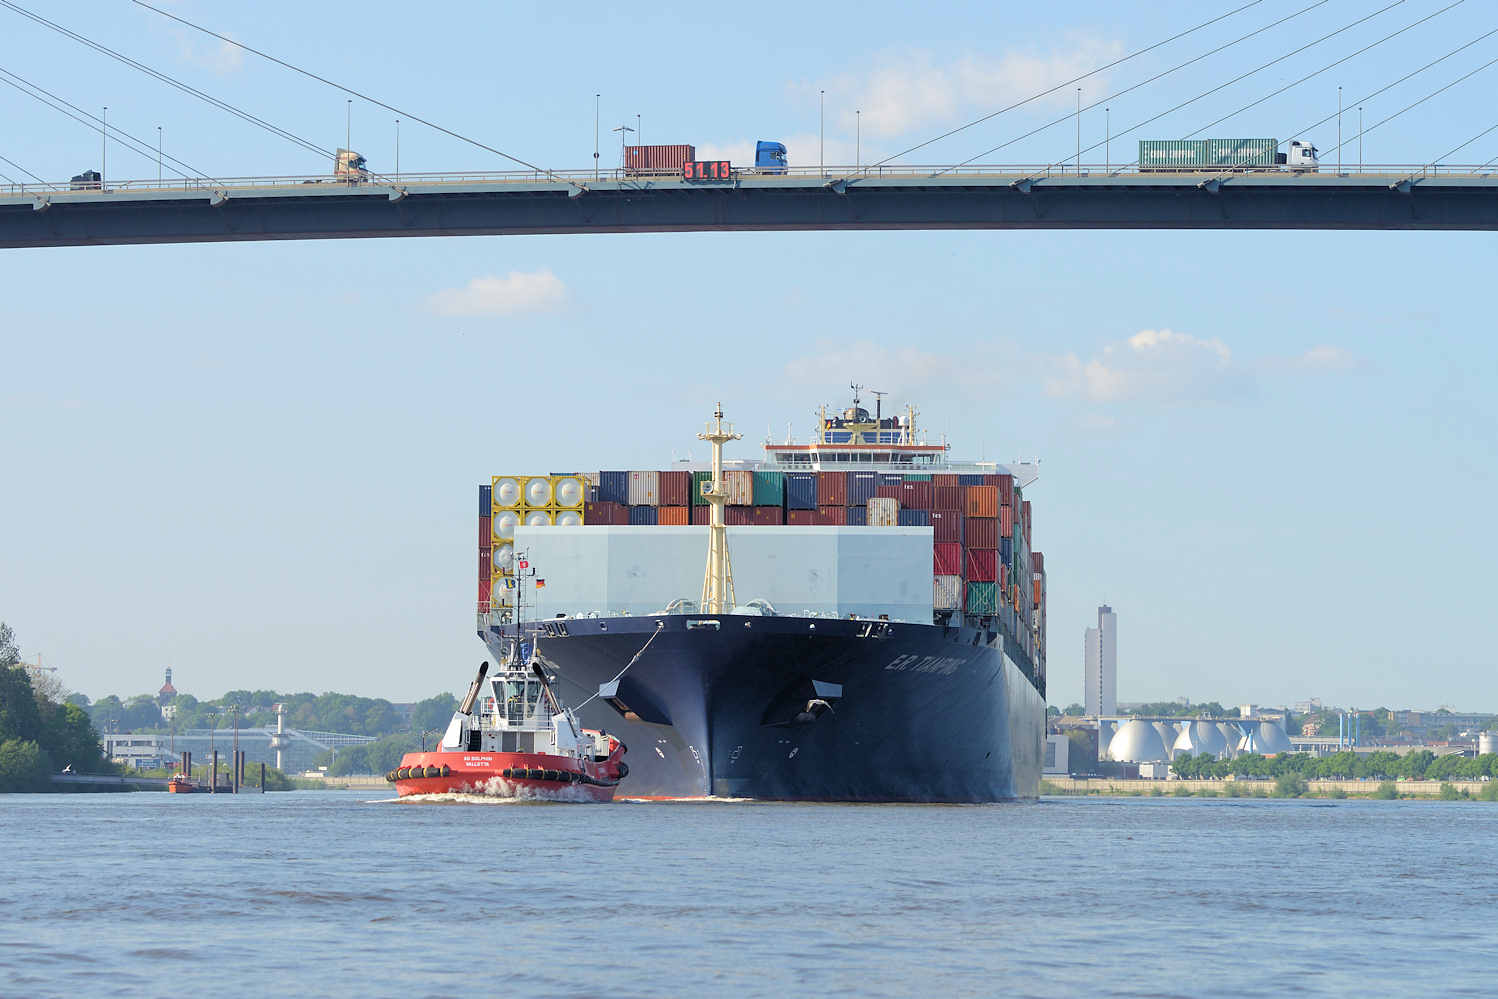 9280 Der Containerfrachter E.R. Tianping läuft in den Hamburger Hafen ein | Schiffsbilder Hamburger Hafen - Schiffsverkehr Elbe